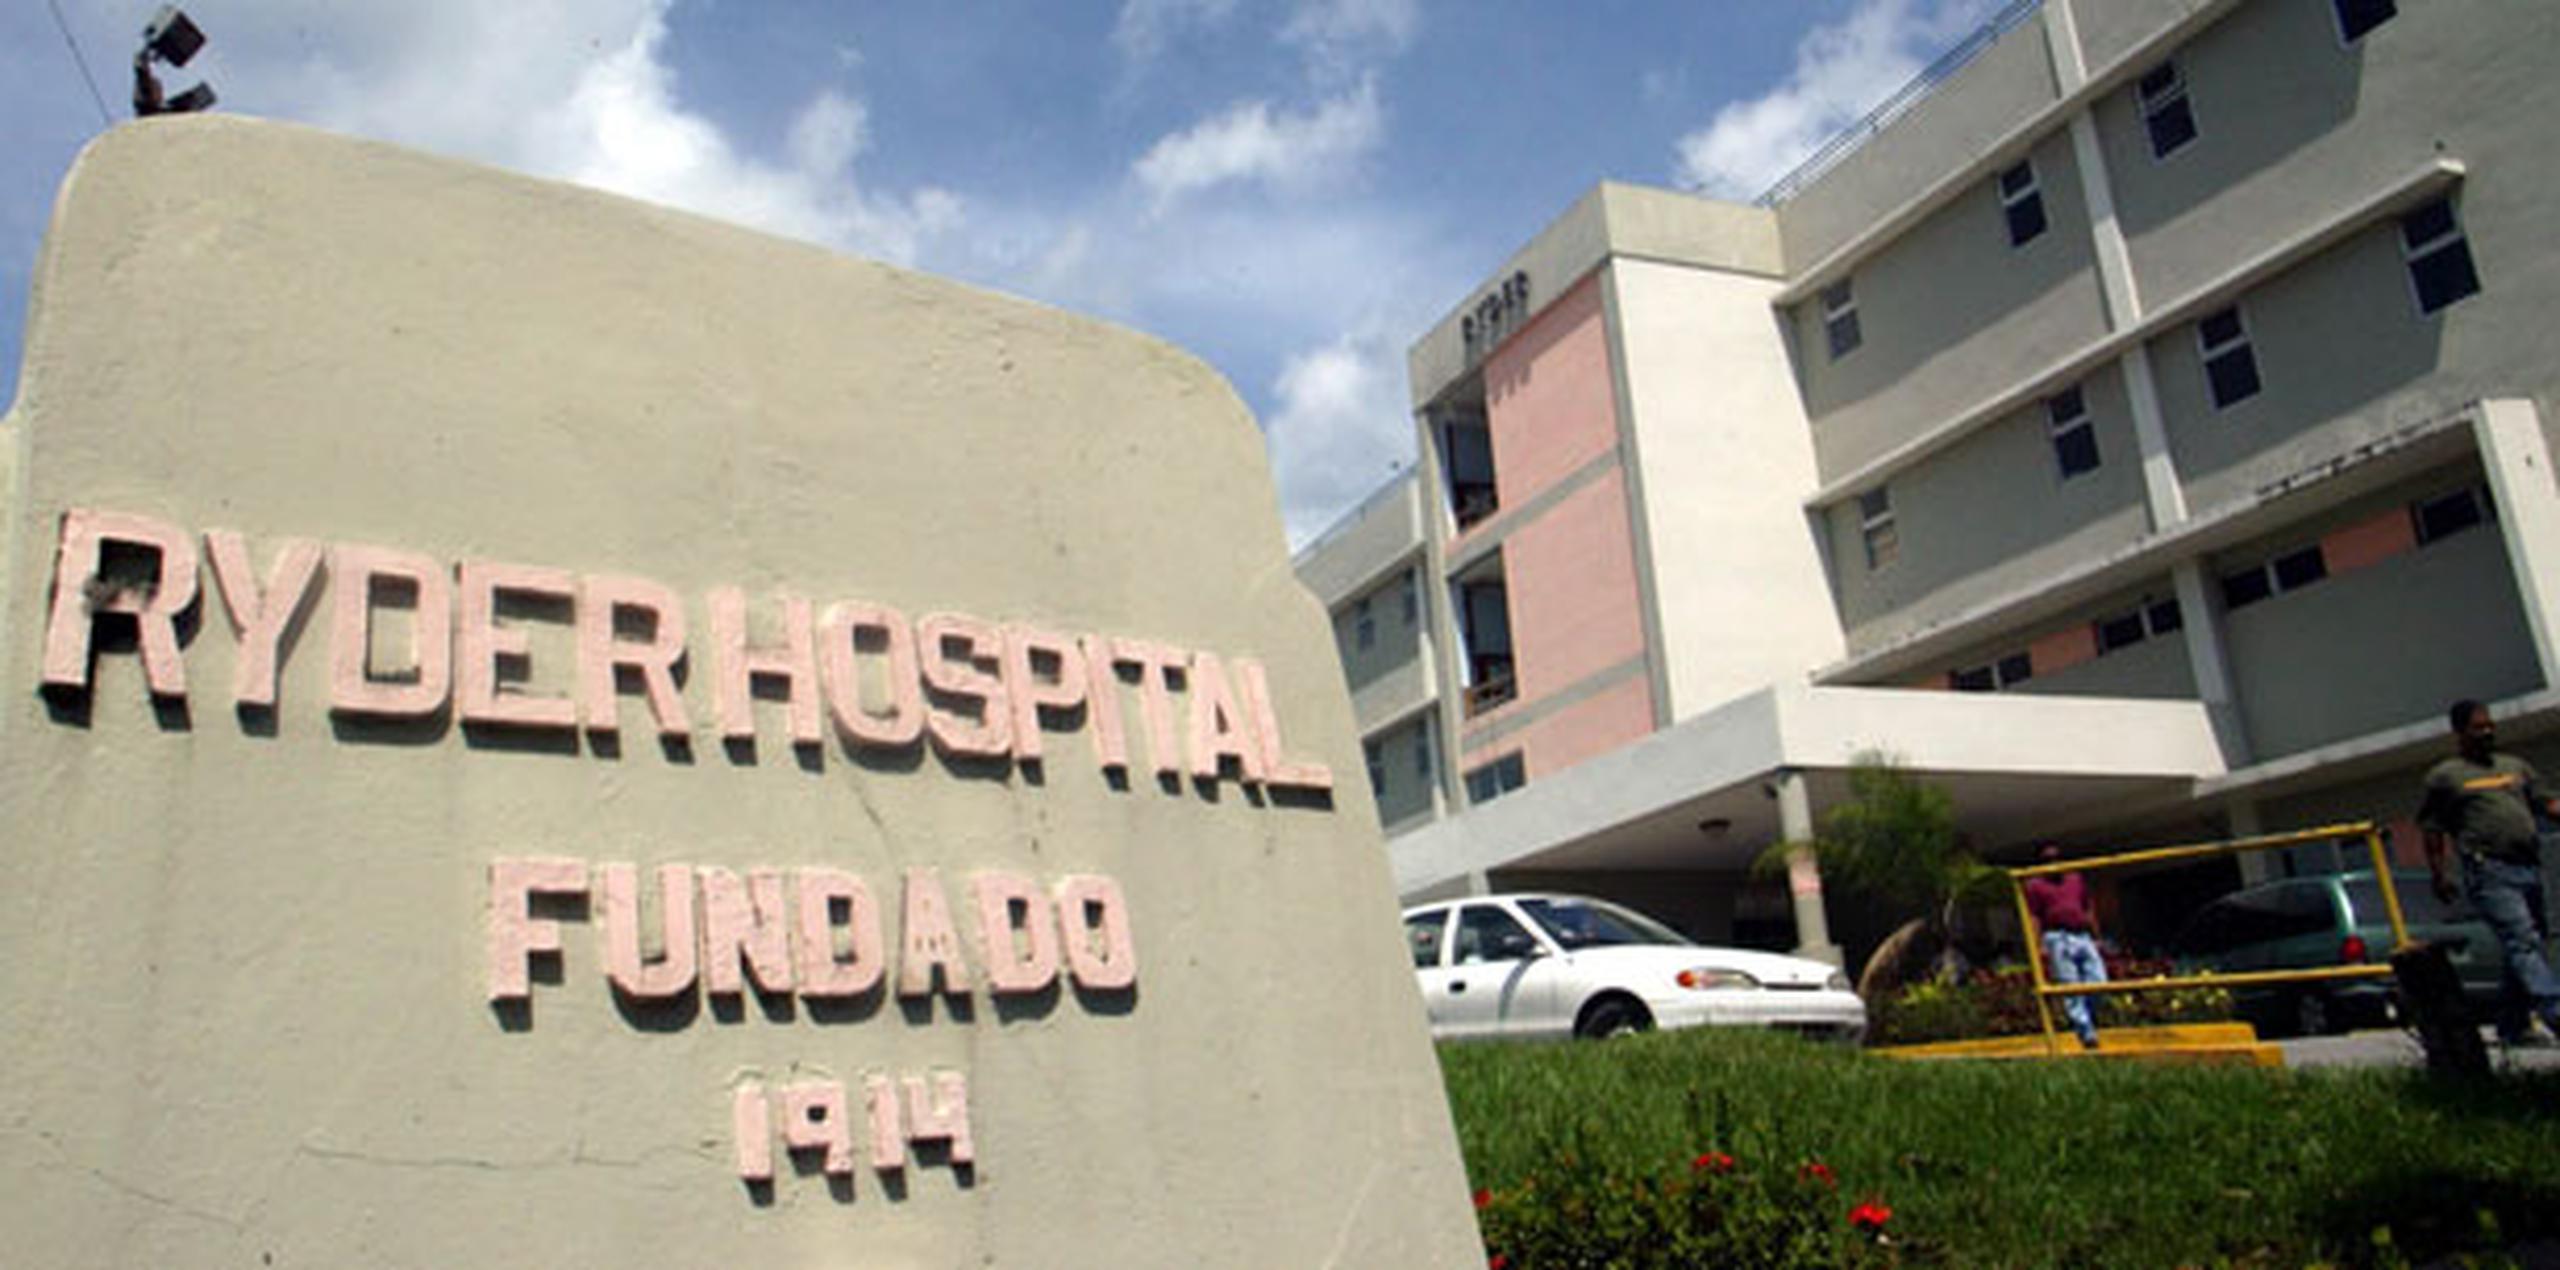 El perjudicado fue llevado al Hospital Ryder, en Humacao, donde se certificó su muerte. (Archivo)